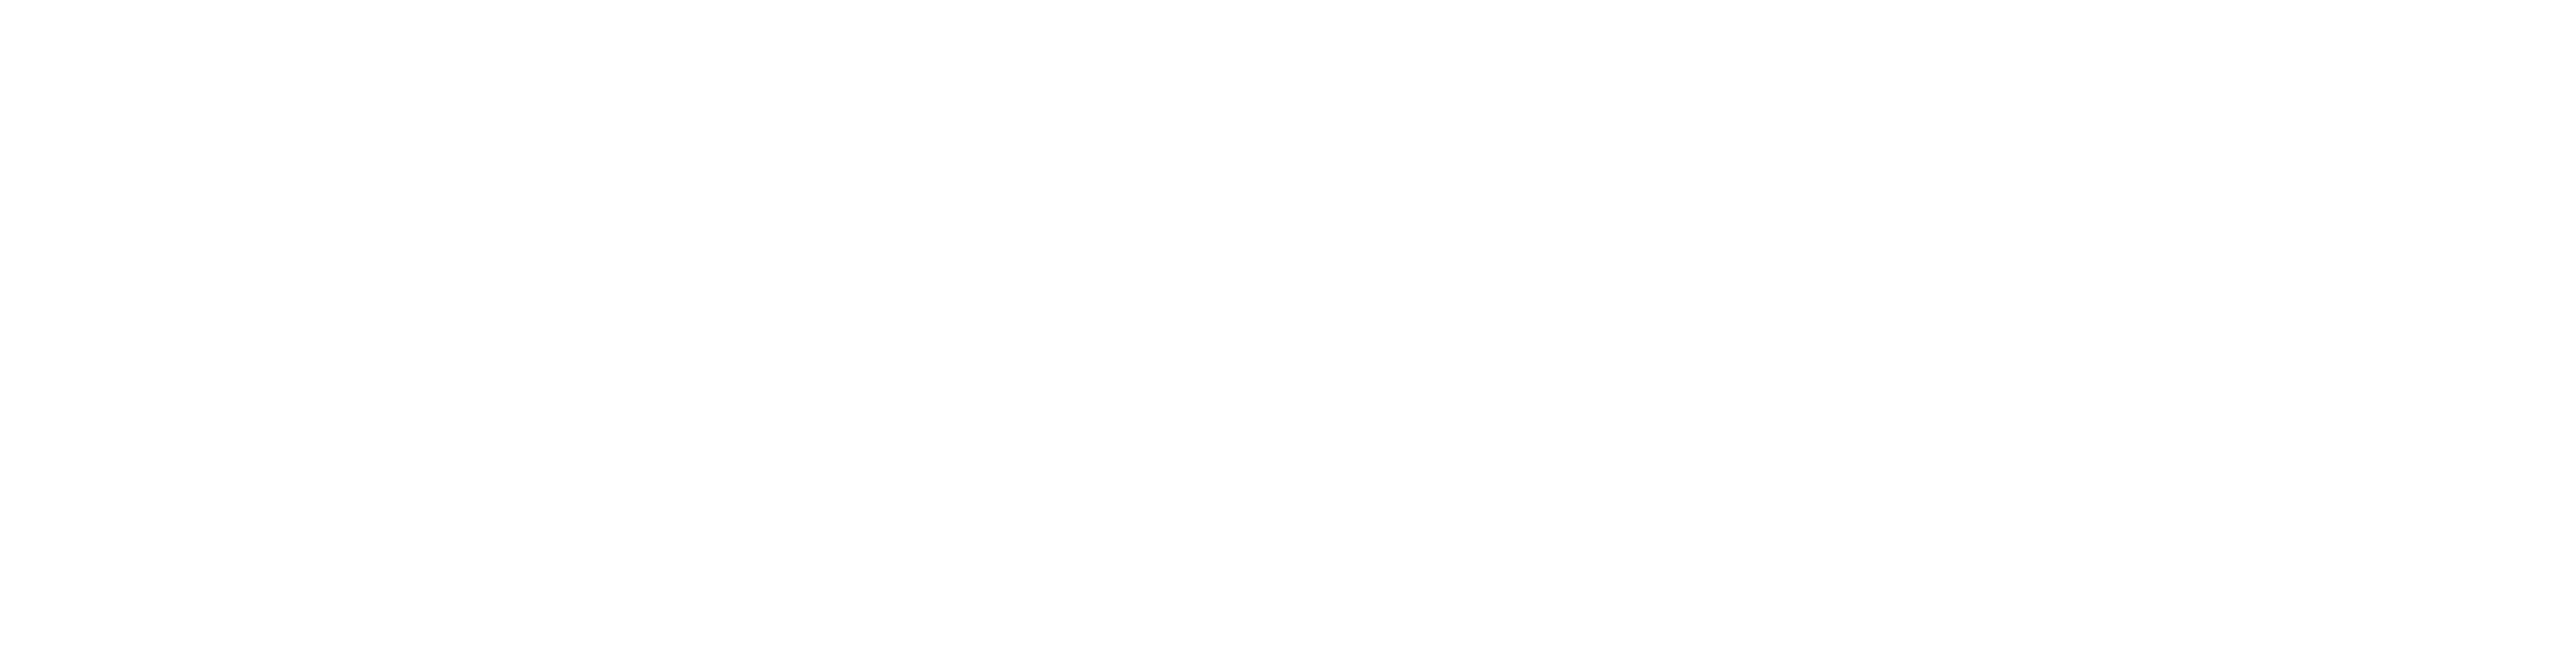 Krampe Logo - Krampe GmbH & Co. KG, Hamm - Fördertechnik, Gewinnungstechnik, Maschinenbau